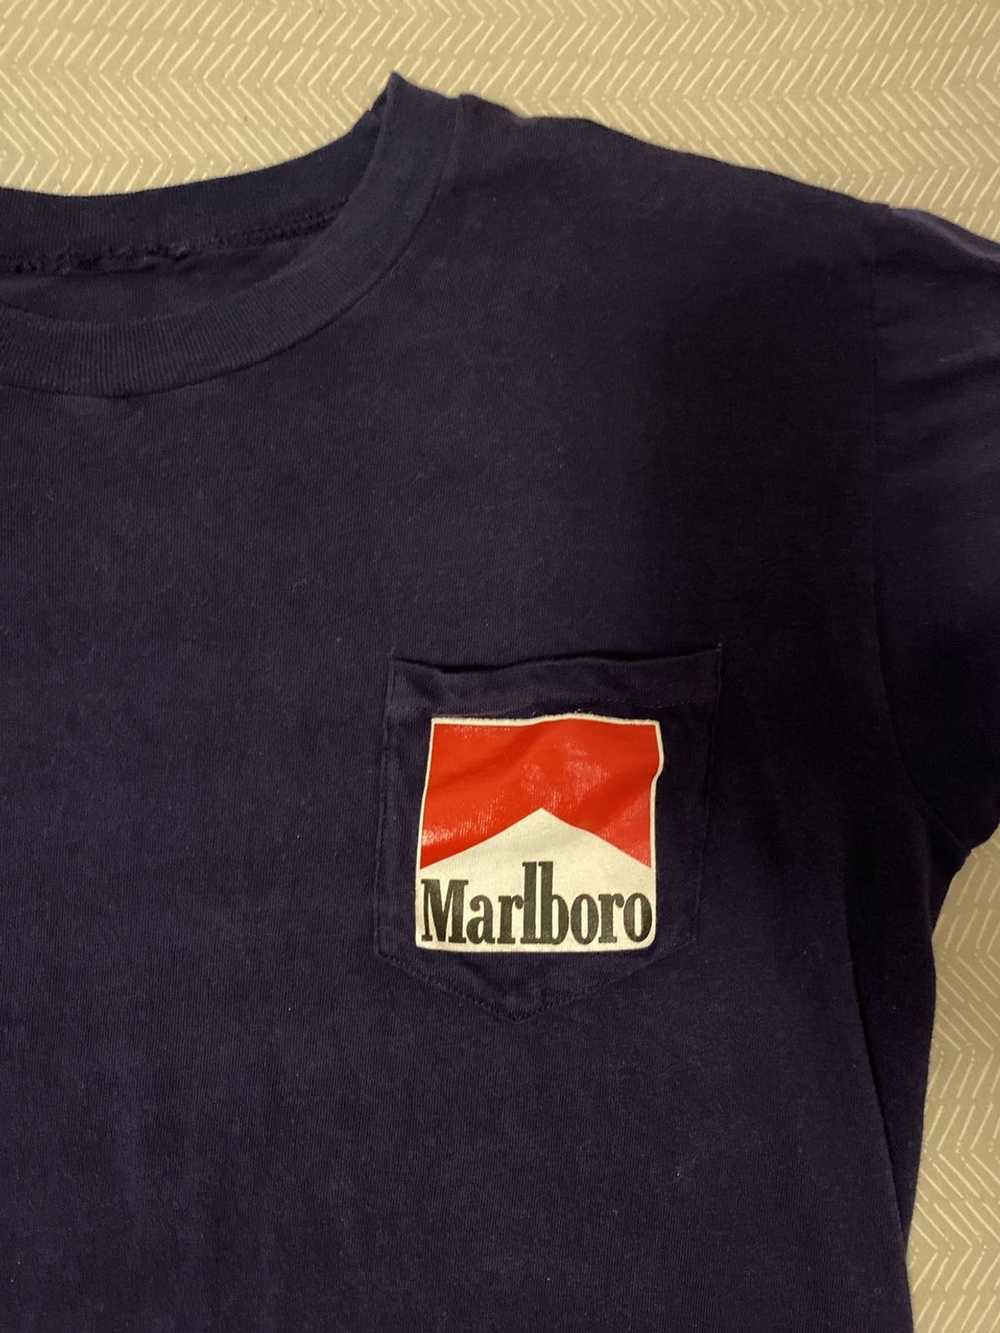 Marlboro Marlboro pocket tee - image 3